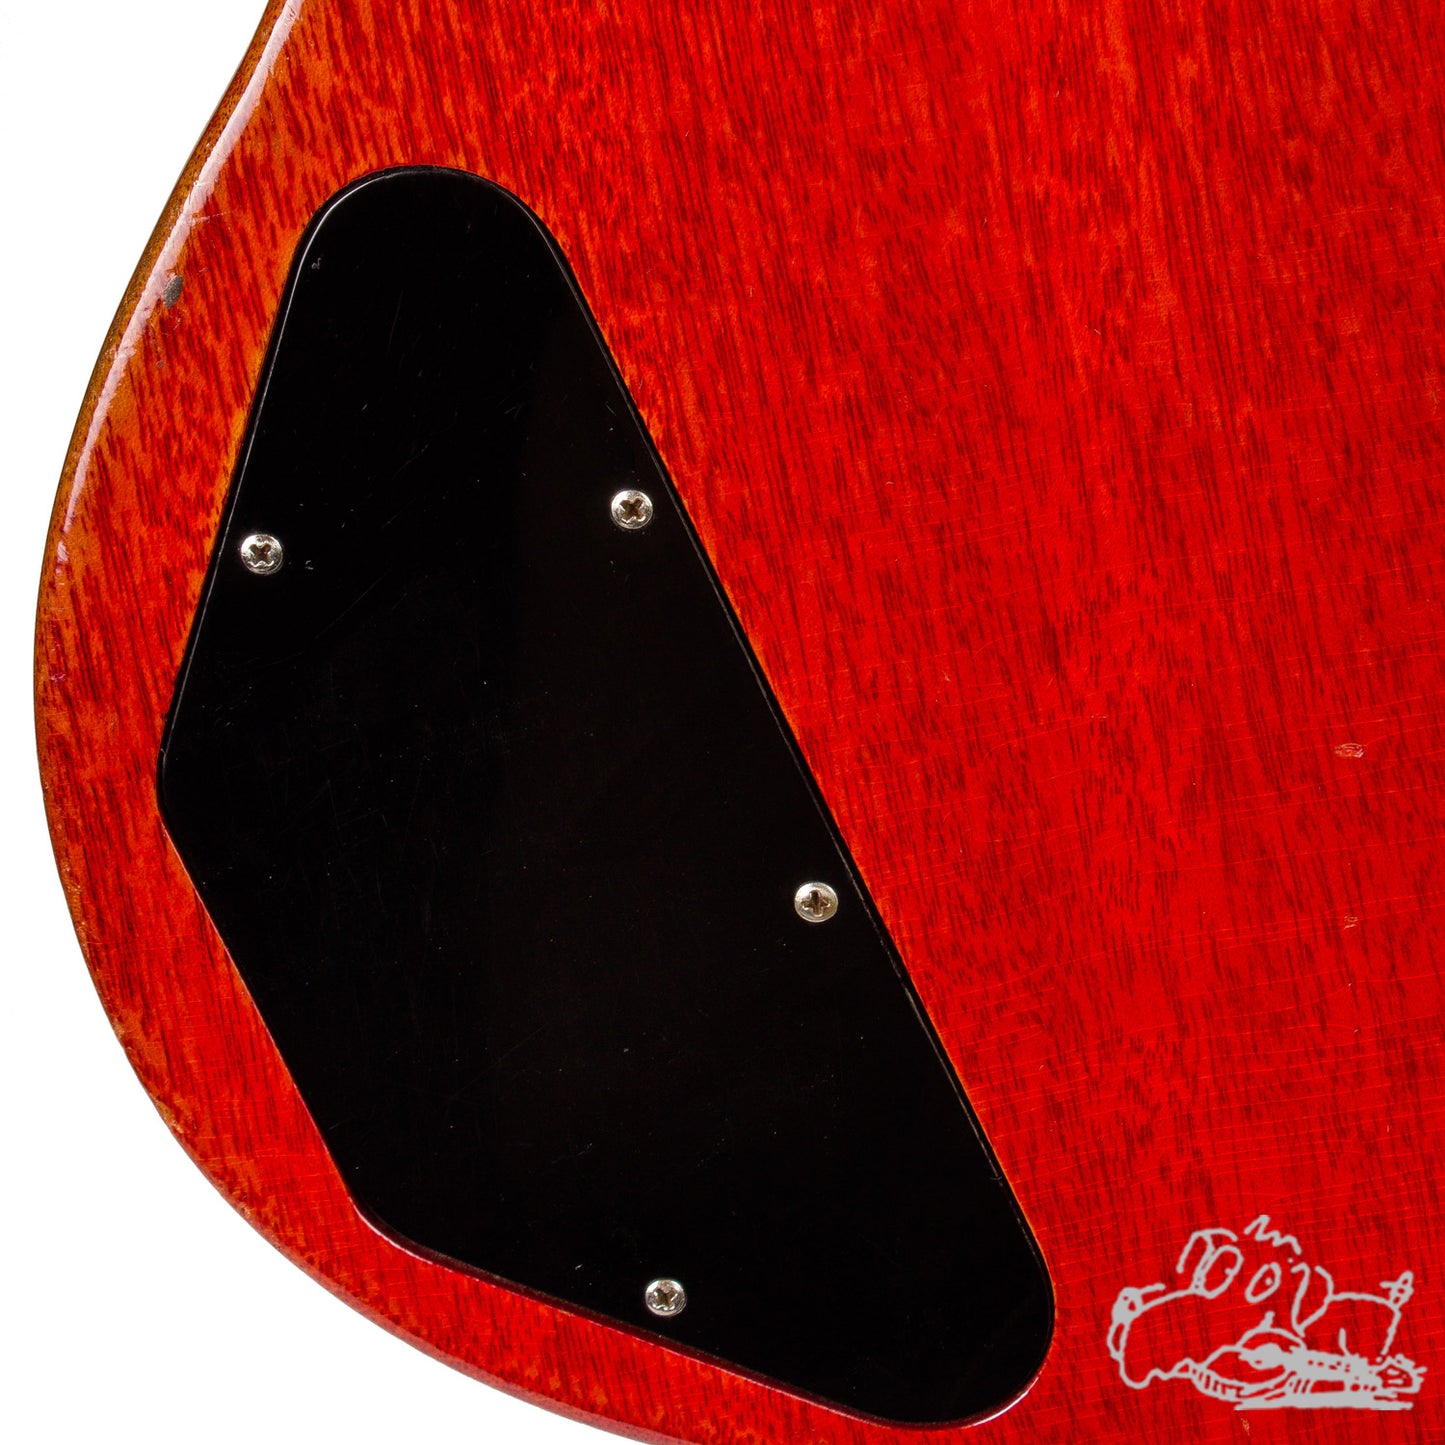 1961 Gibson Les Paul SG